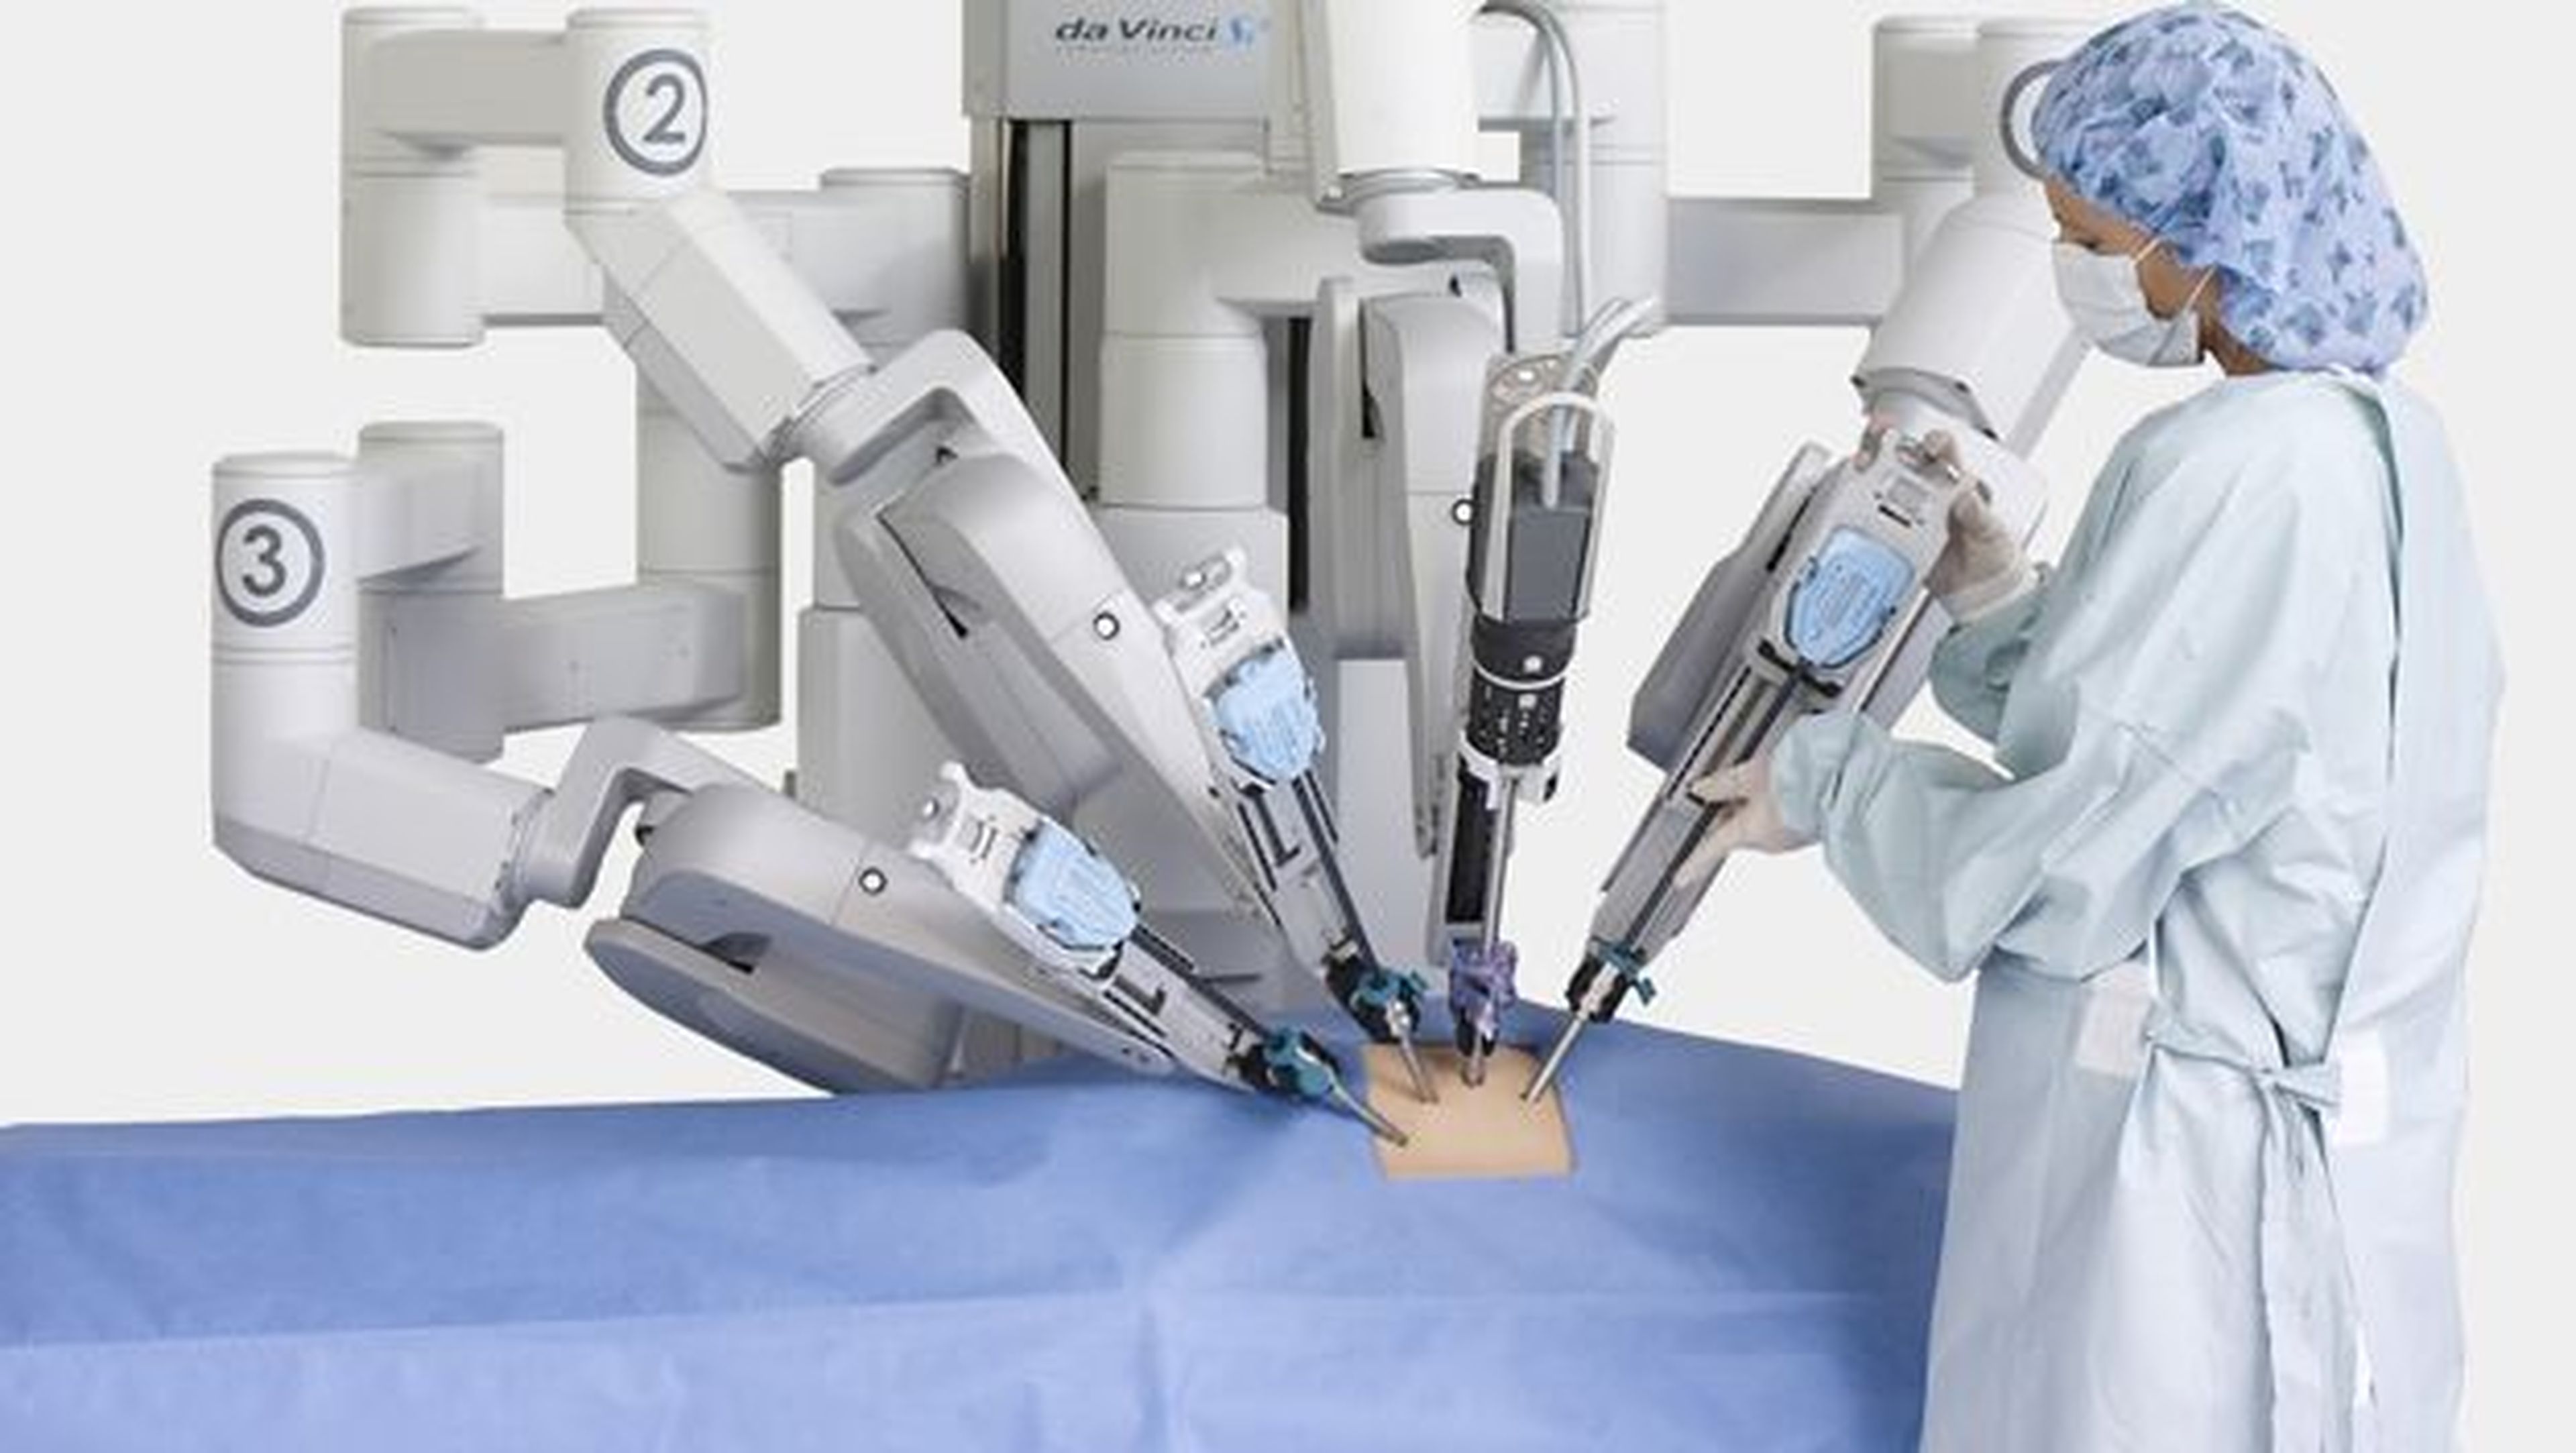 Cirugía robótica, entre las innovaciones de la medicina del futuro